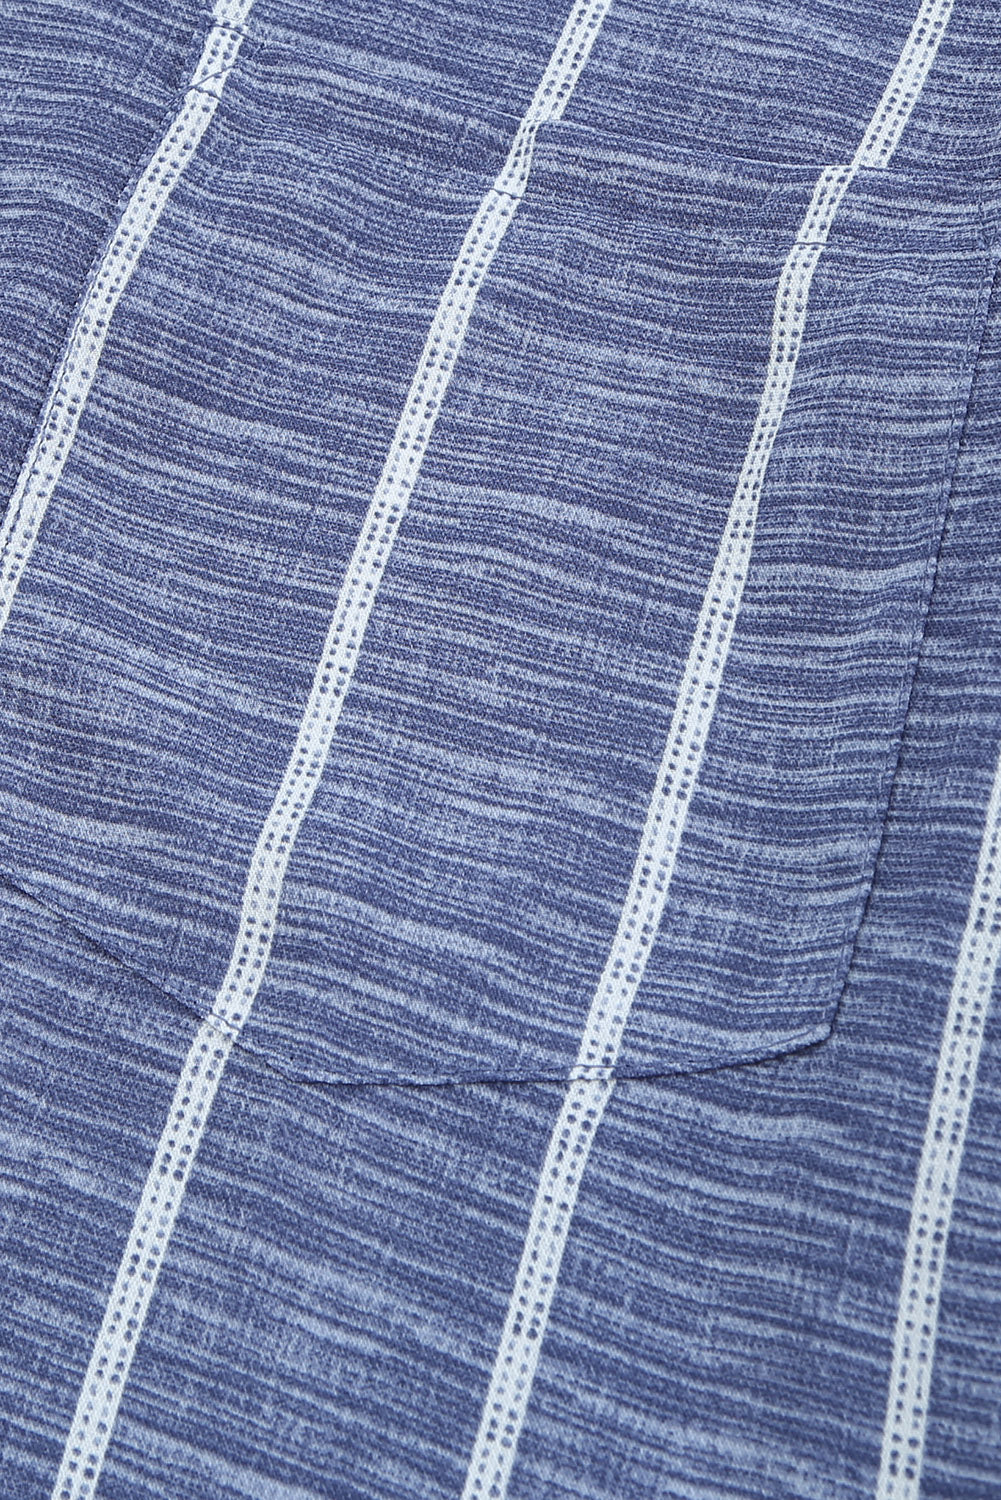 Multicolor Striped V Neck Pocket Long Sleeve Top